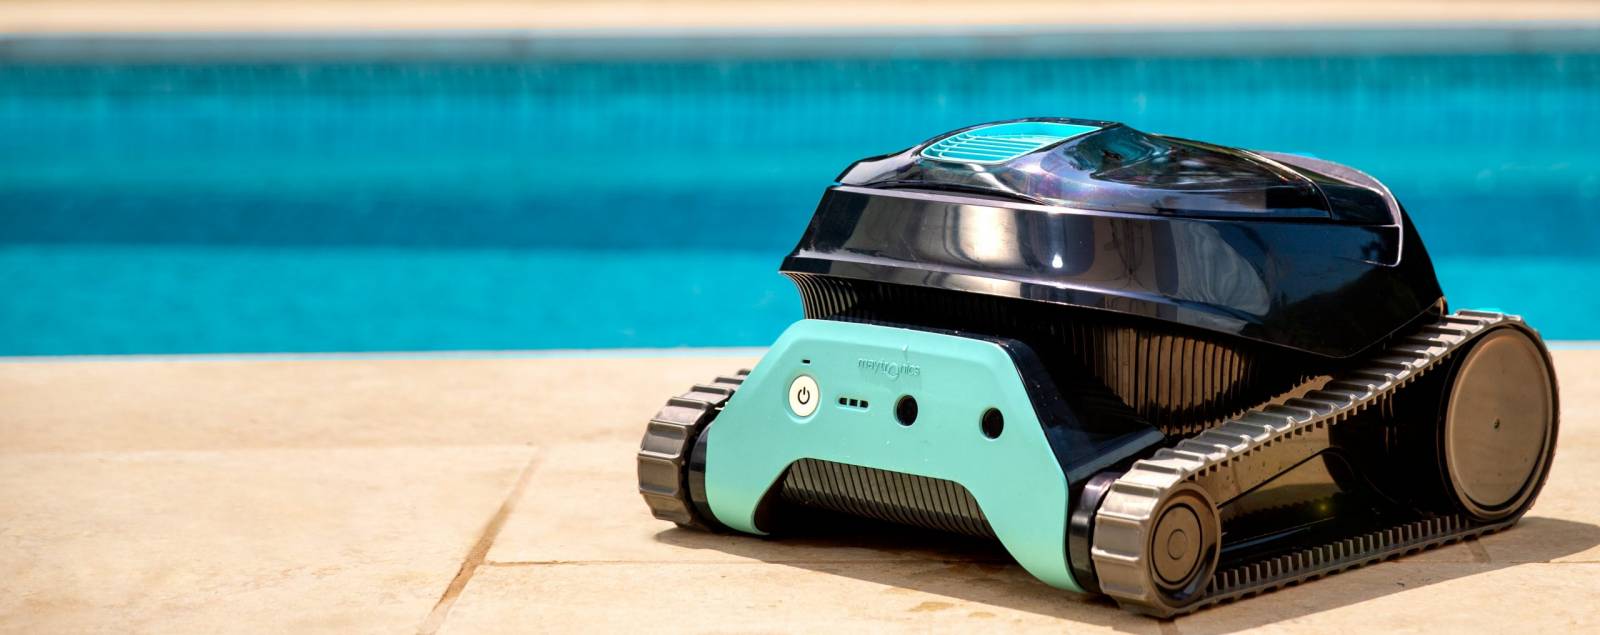 Dolphin Robot electrique de piscine sans fil fond et parois - liberty 300  pas cher 